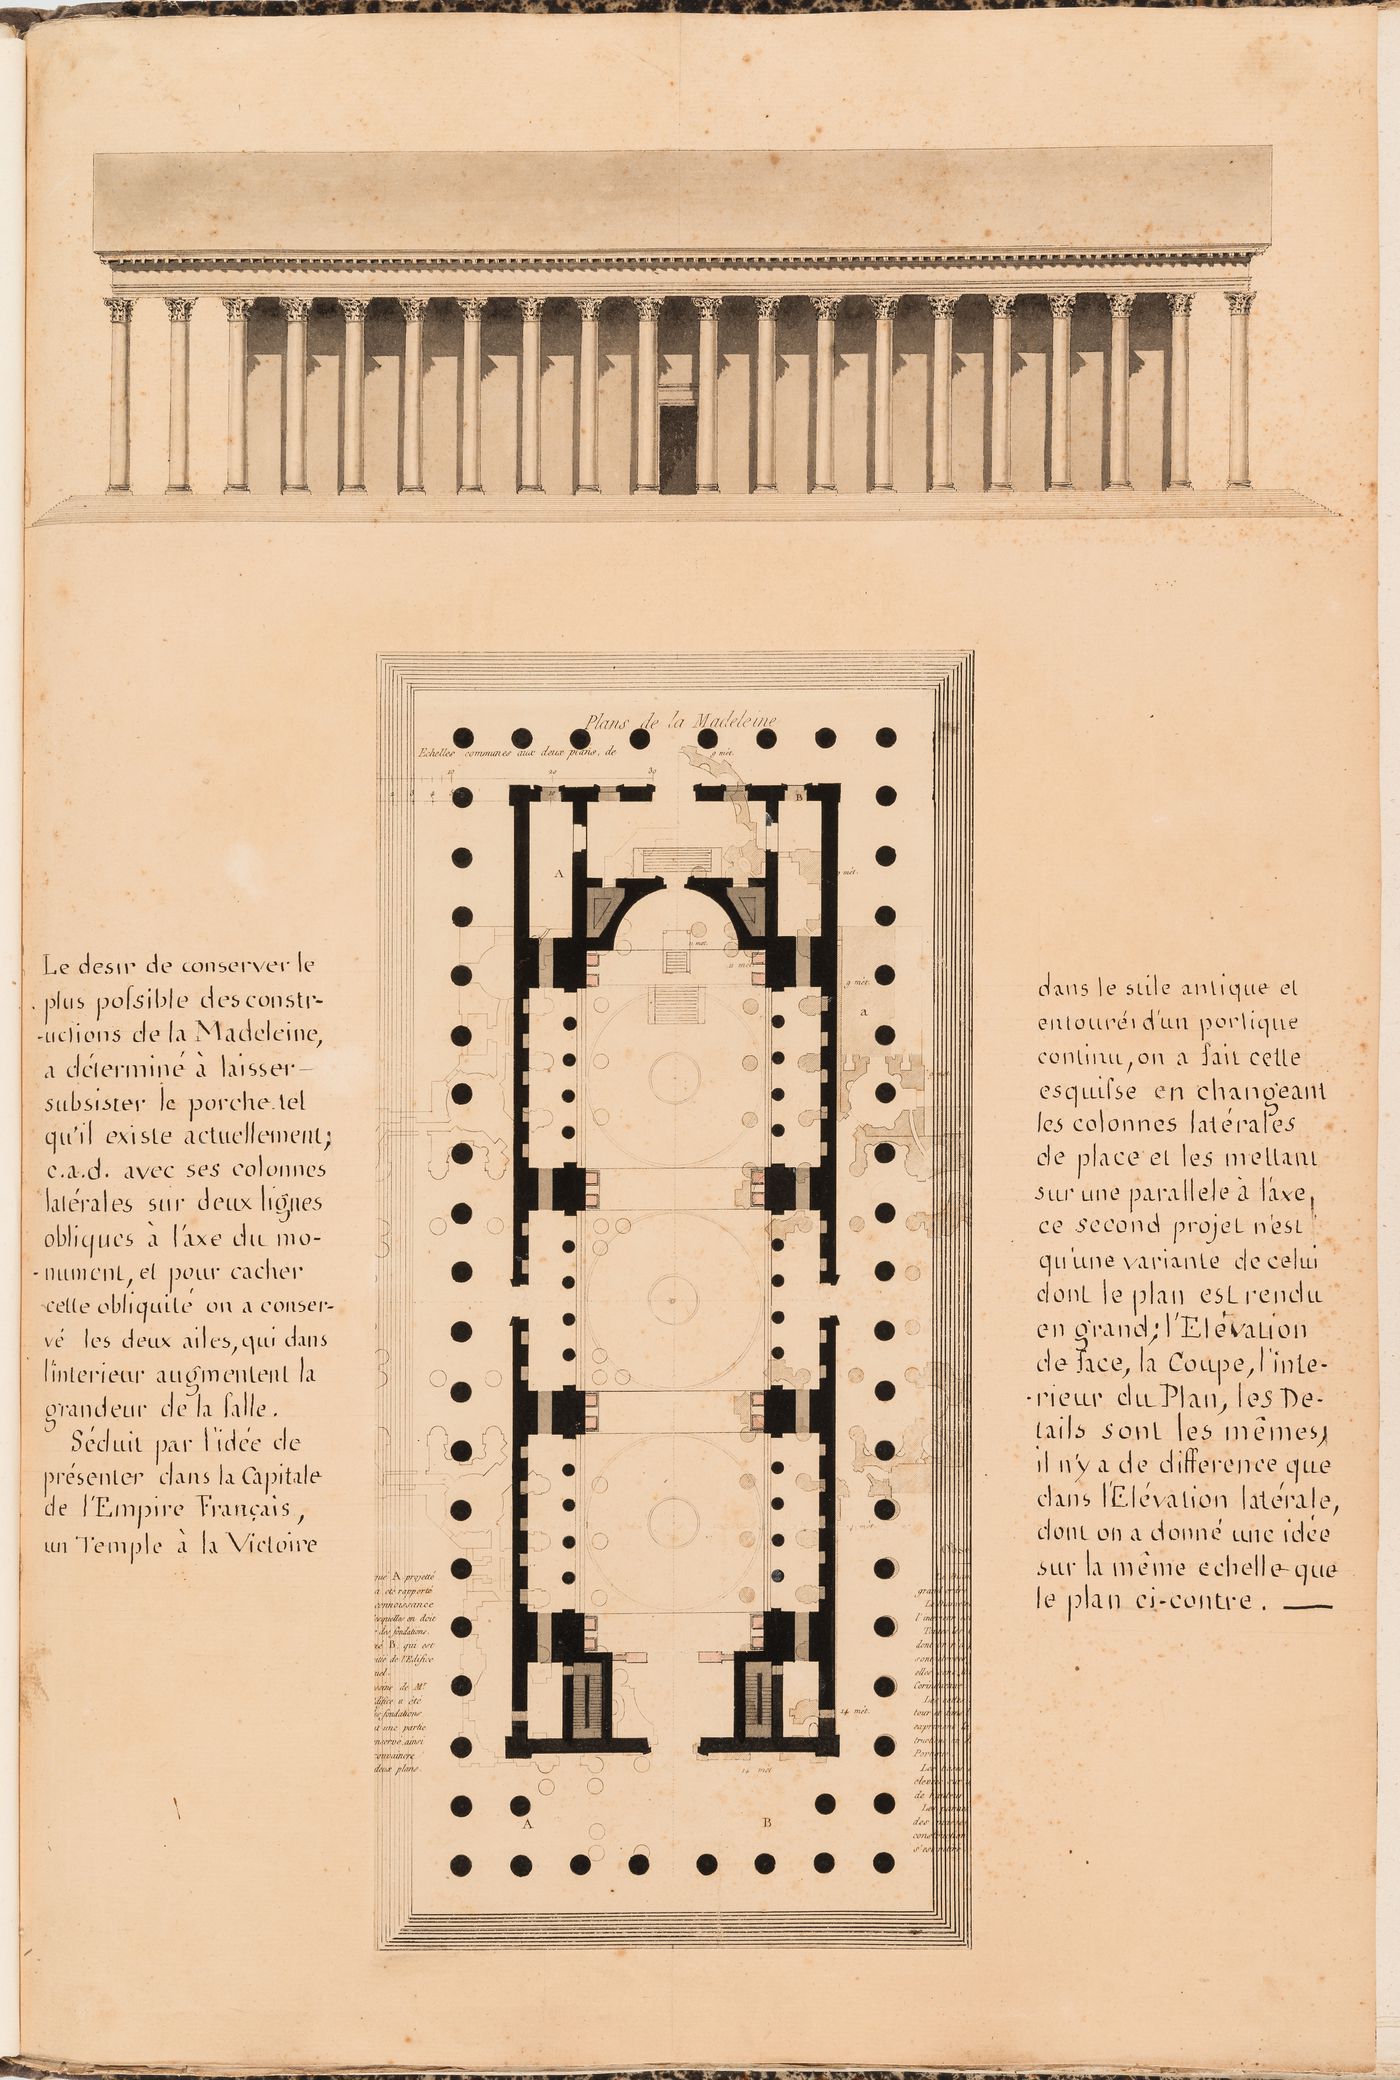 Project for the conversion of the Église de la Madeleine into a Temple de la Gloire, Paris: Elevation and plan